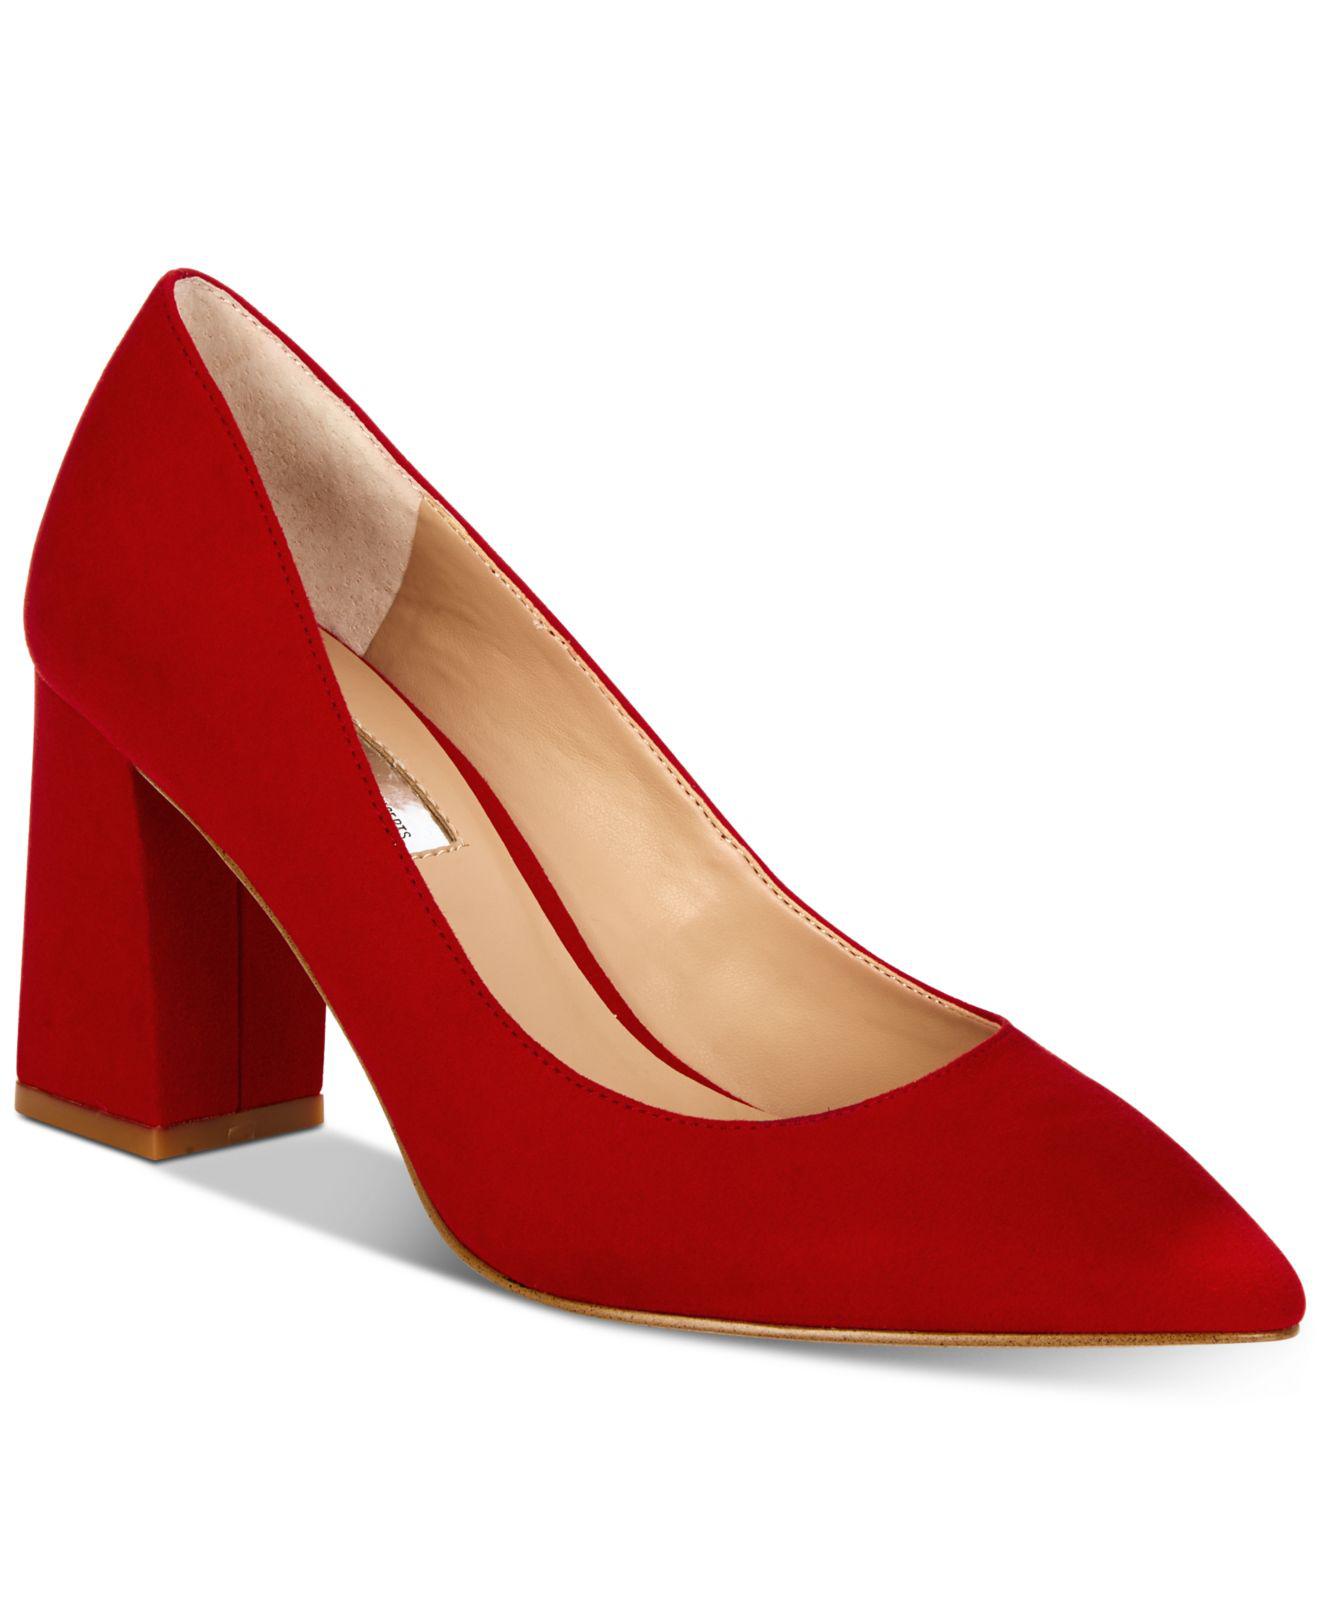 macy's red high heels